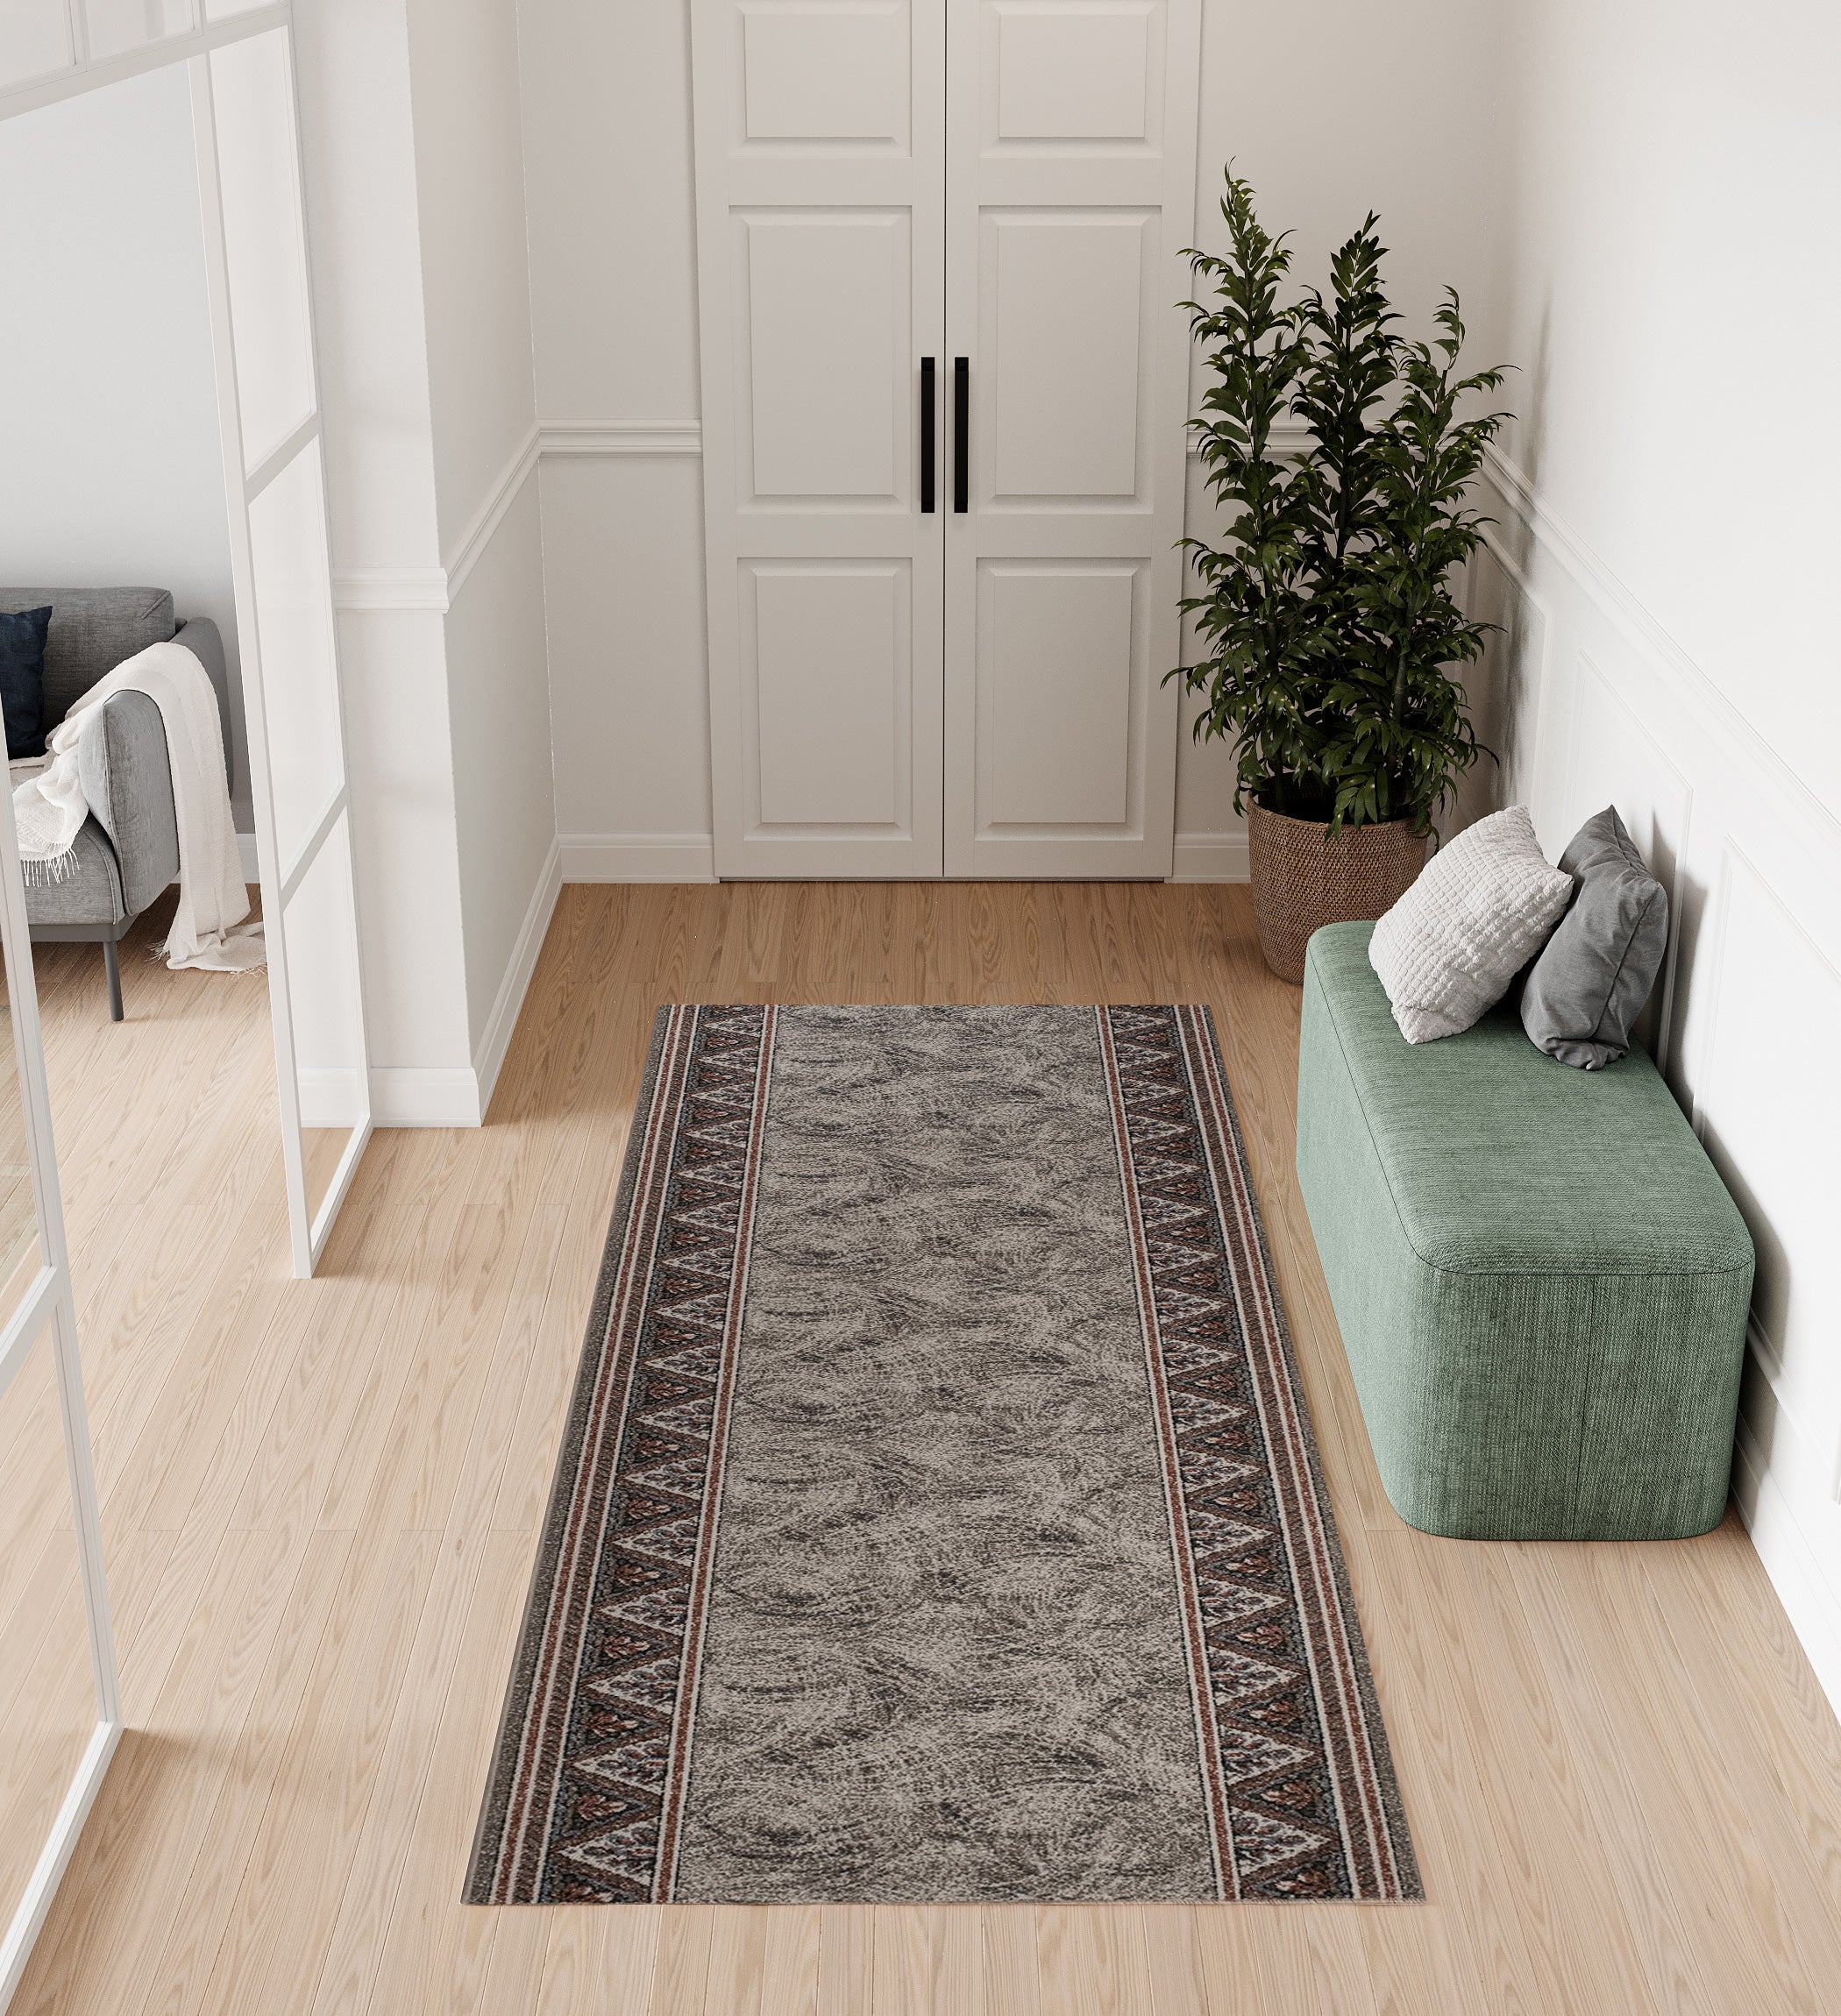 Idee per la decorazione del corridoio con tappeti